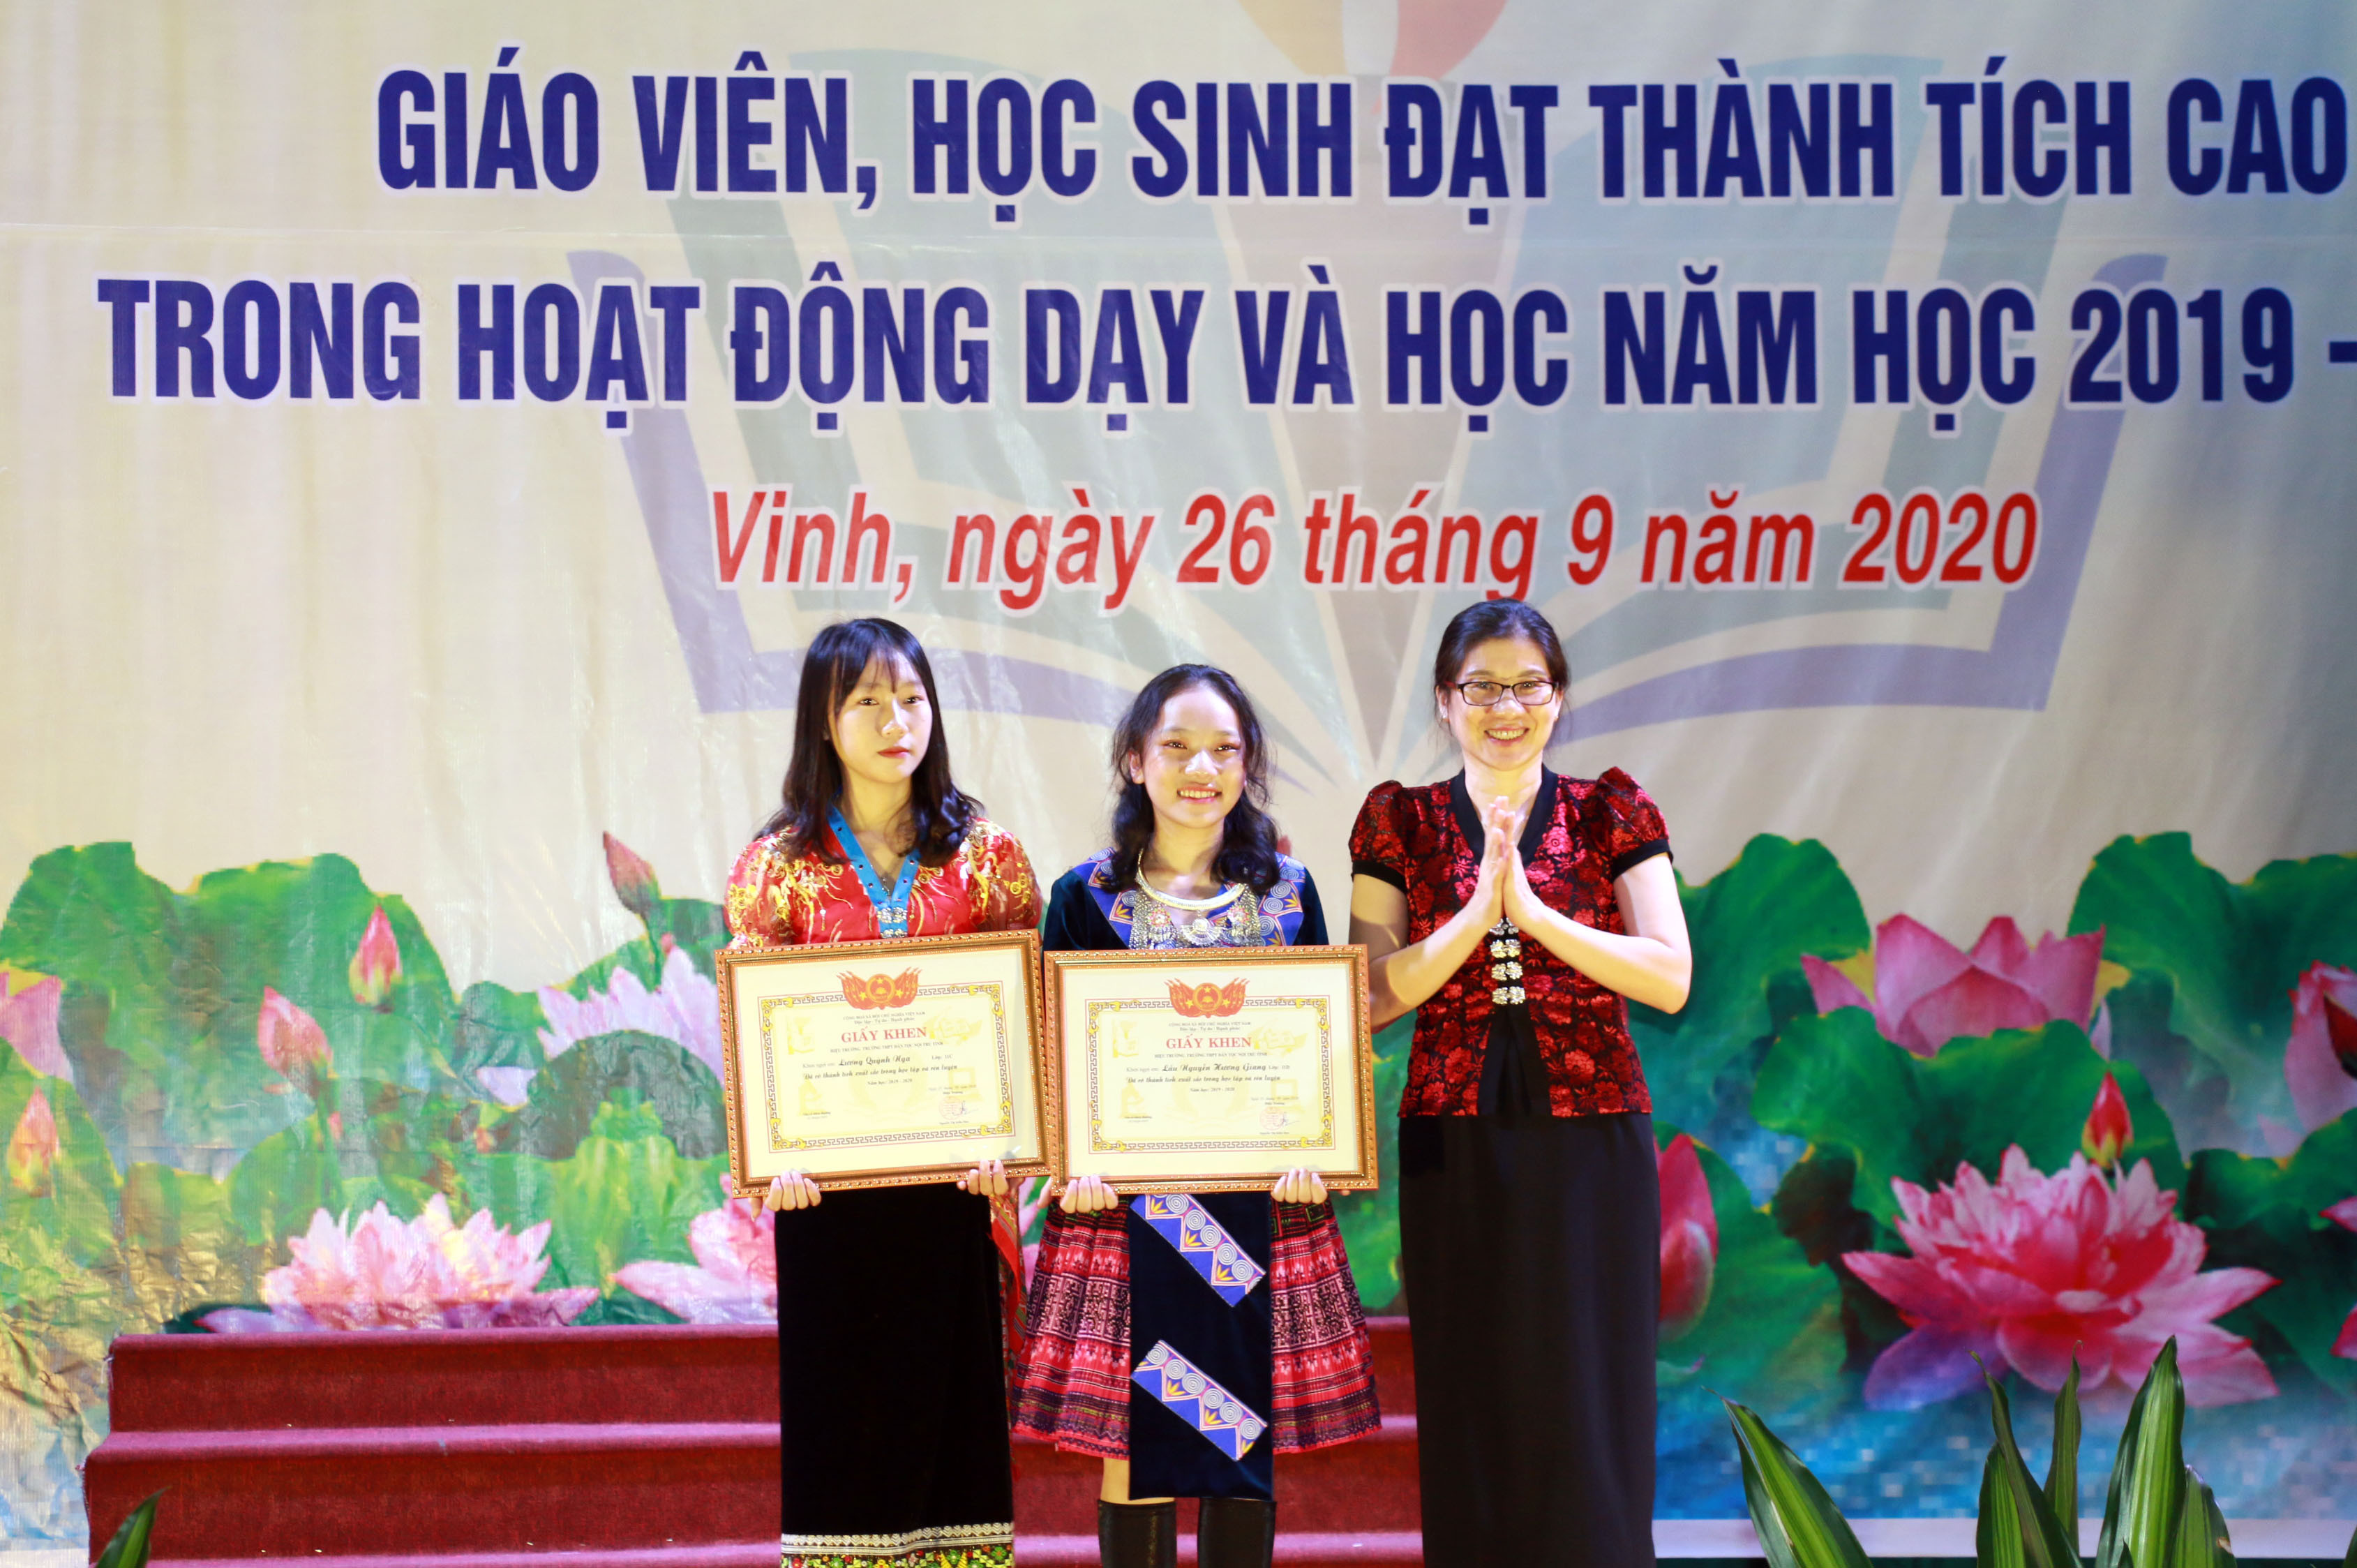 Đồng chí Lô Thị Kim Ngân khen thưởng cho hai học sinh đạt giải Nhất tại cuộc thi KHKT cấp tỉnh. Ảnh: Mỹ Hà.